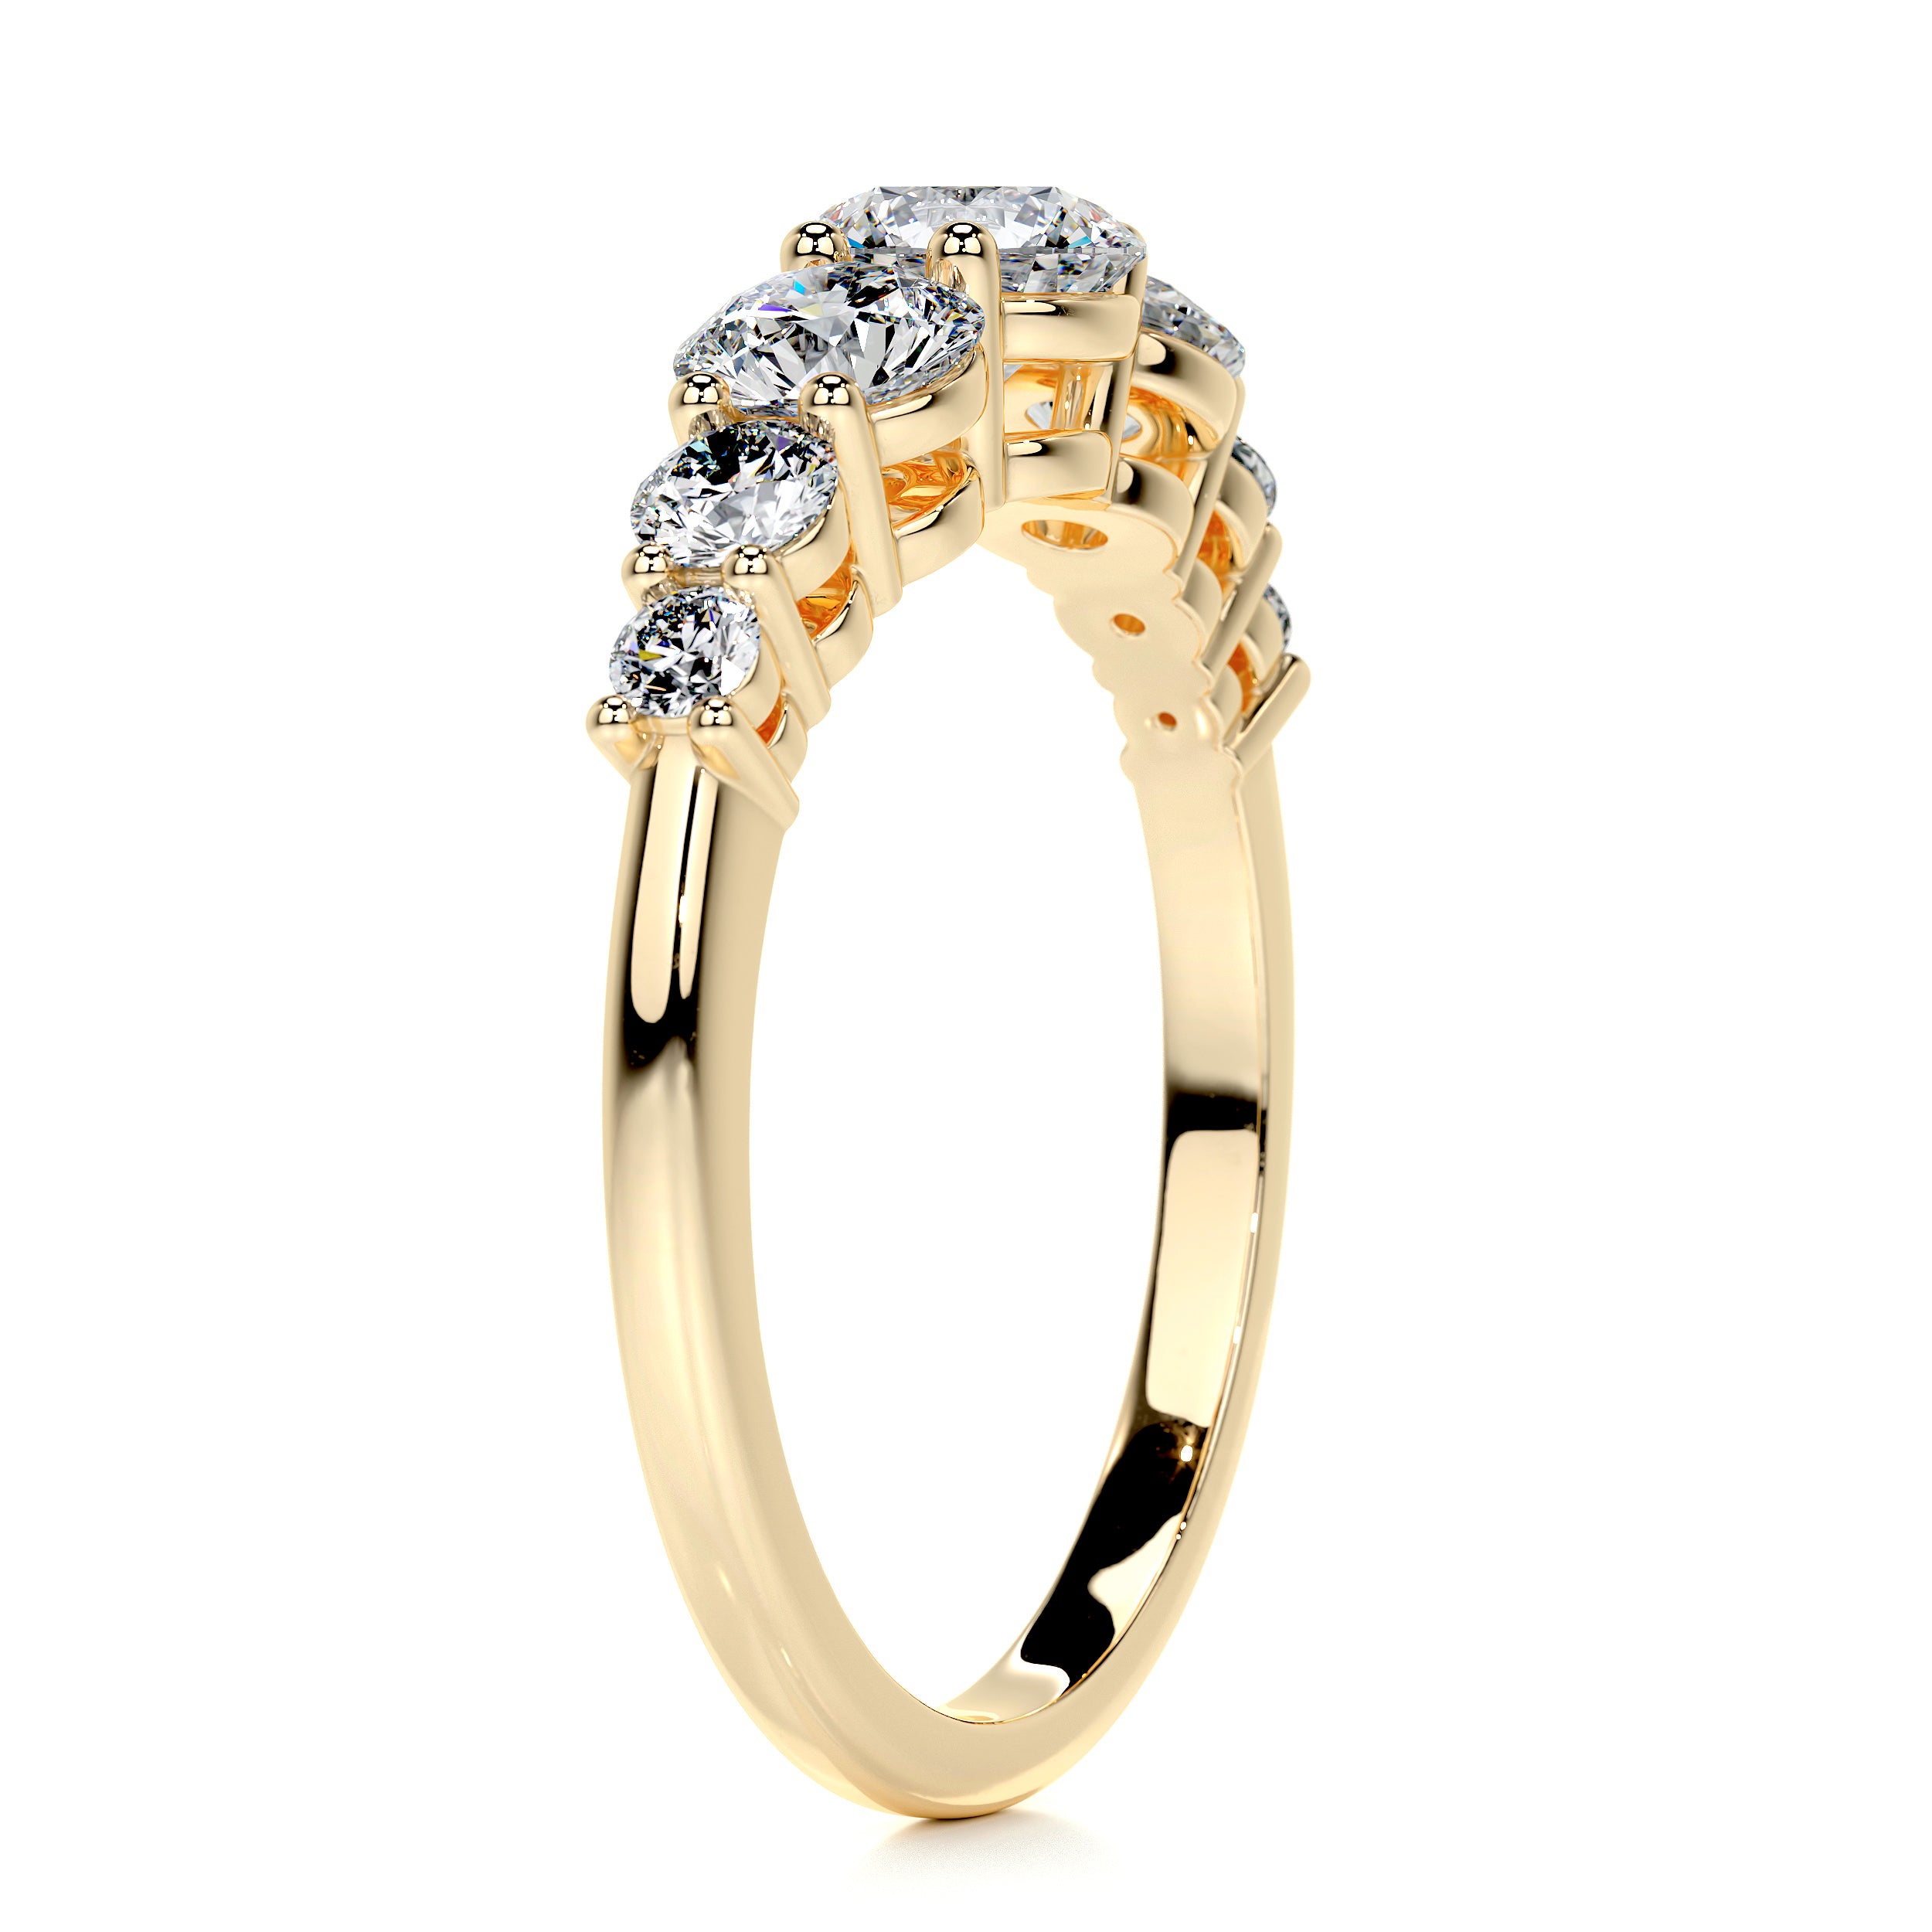 Makenzi Diamond Engagement Ring -18K Yellow Gold